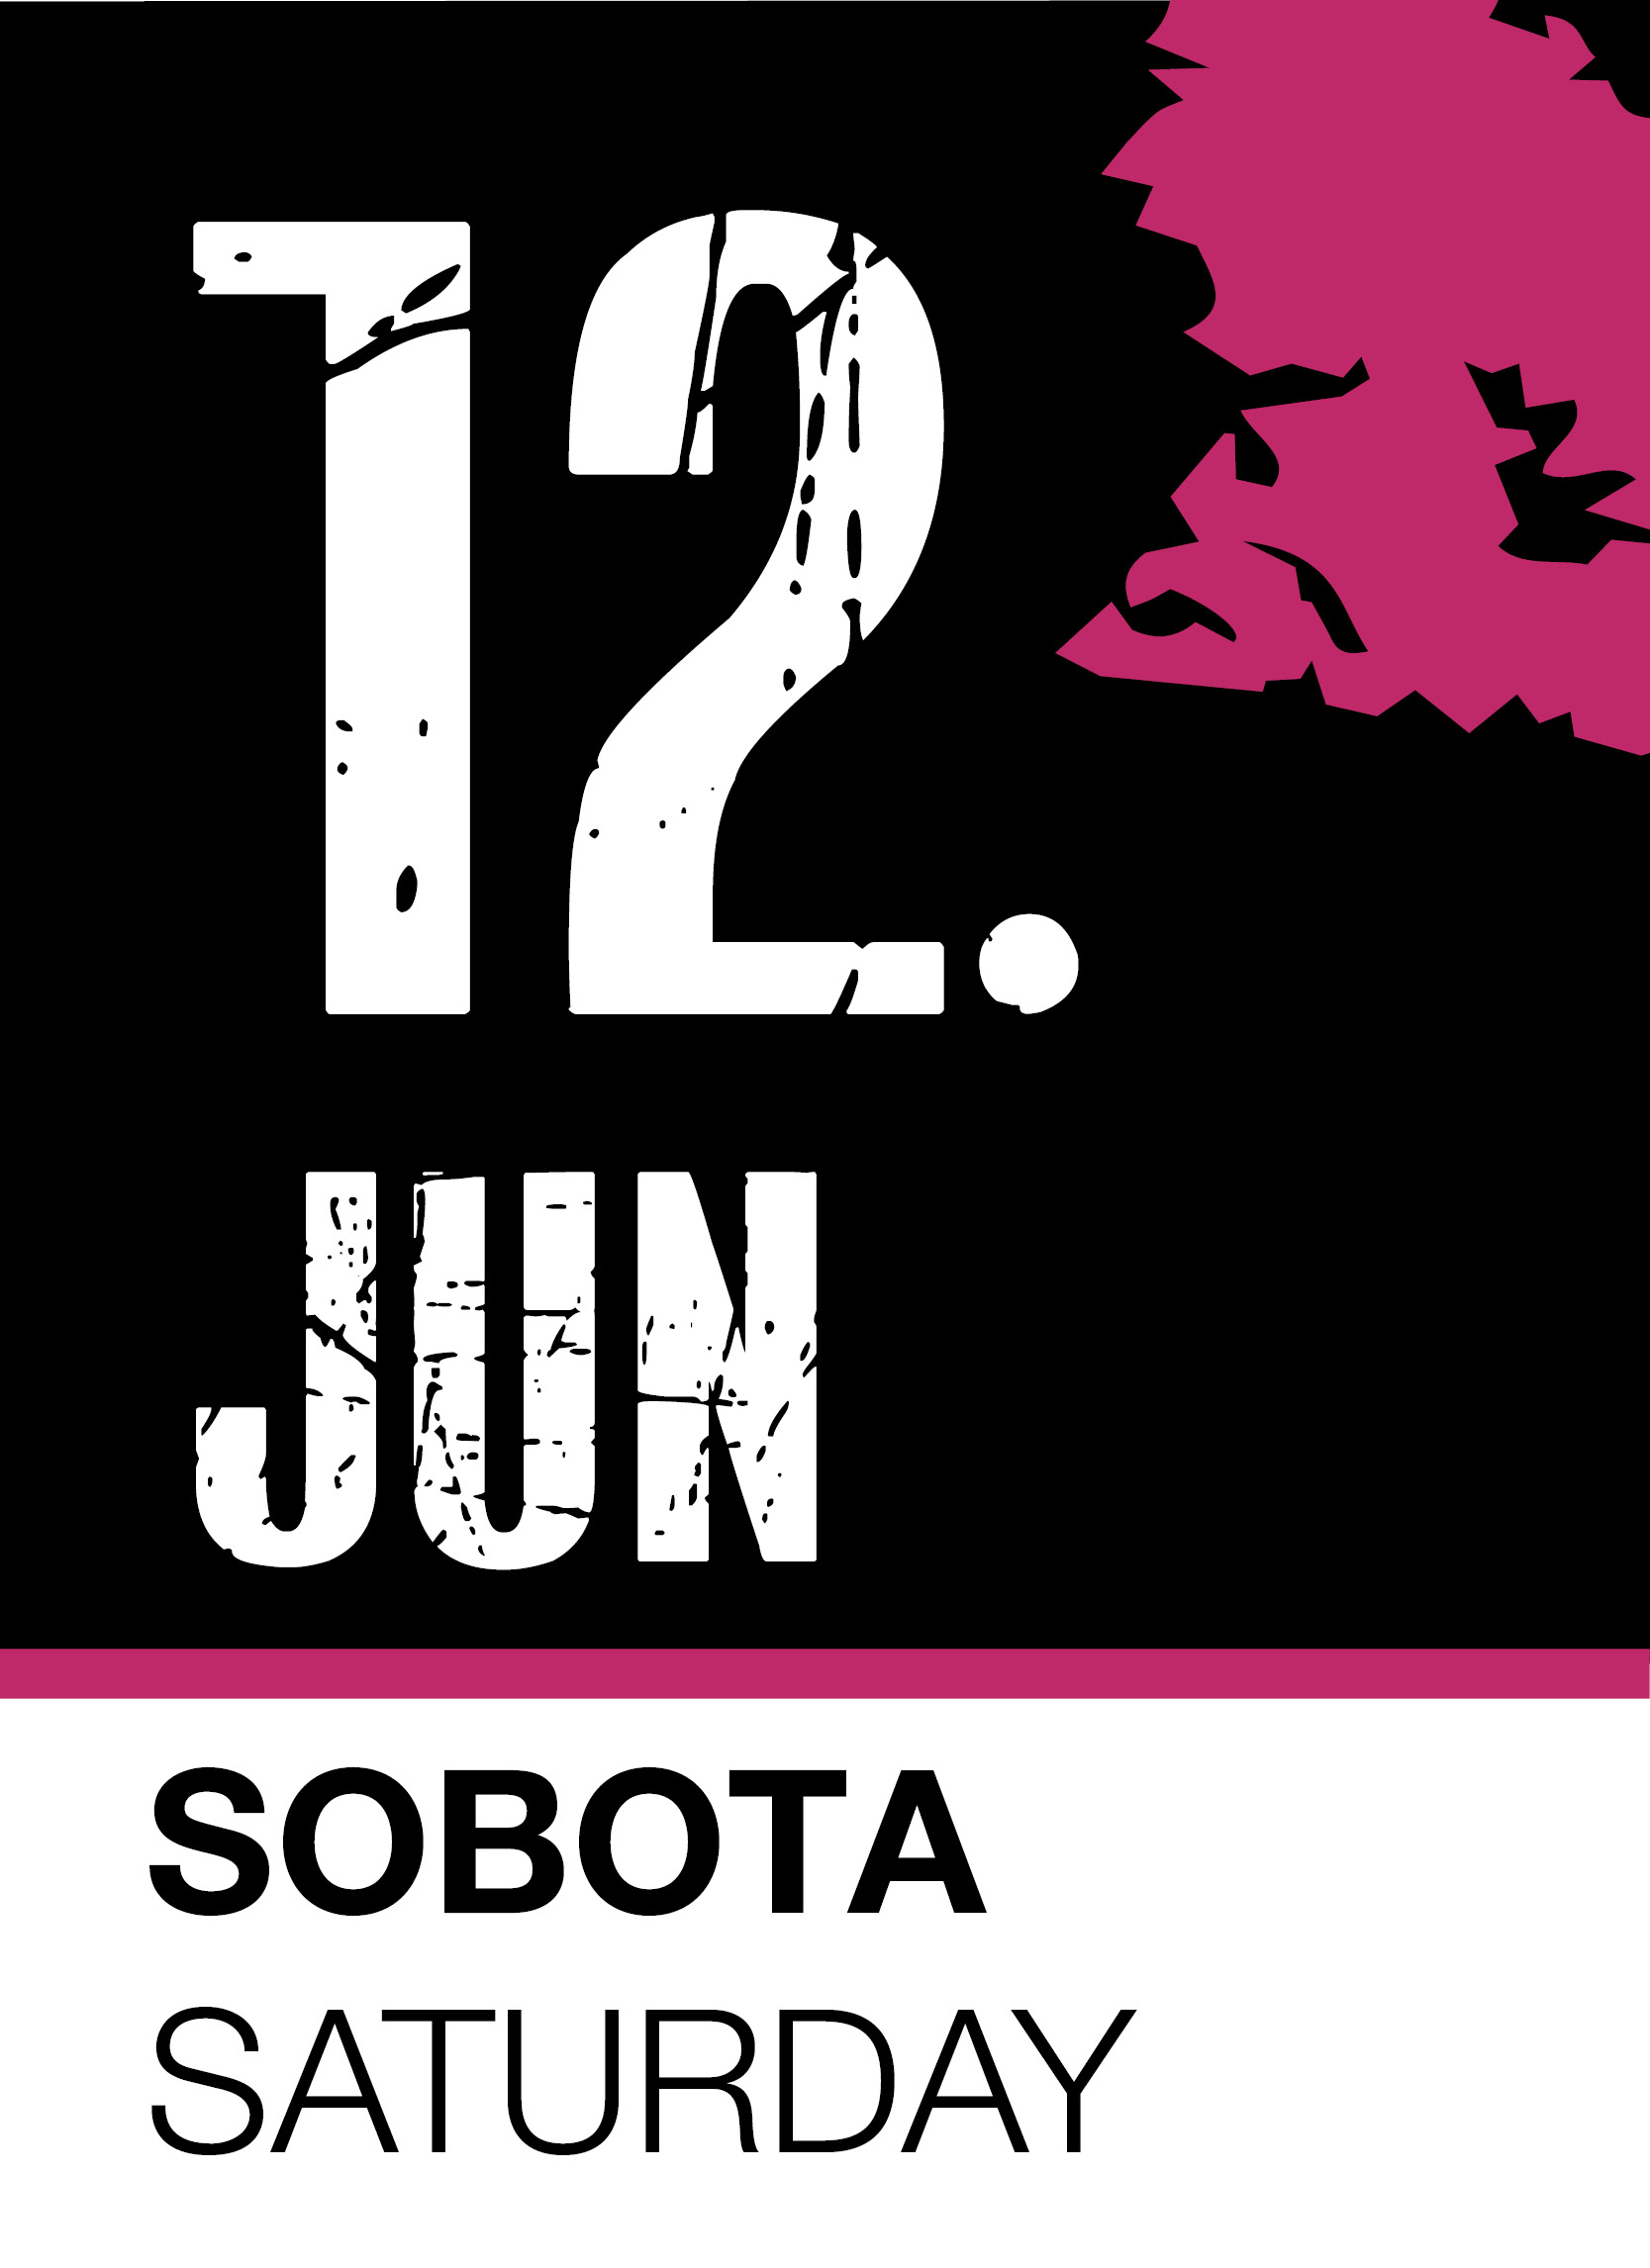 Ljubljana Pride Festival 2021 Opening: Pride Fundraiser